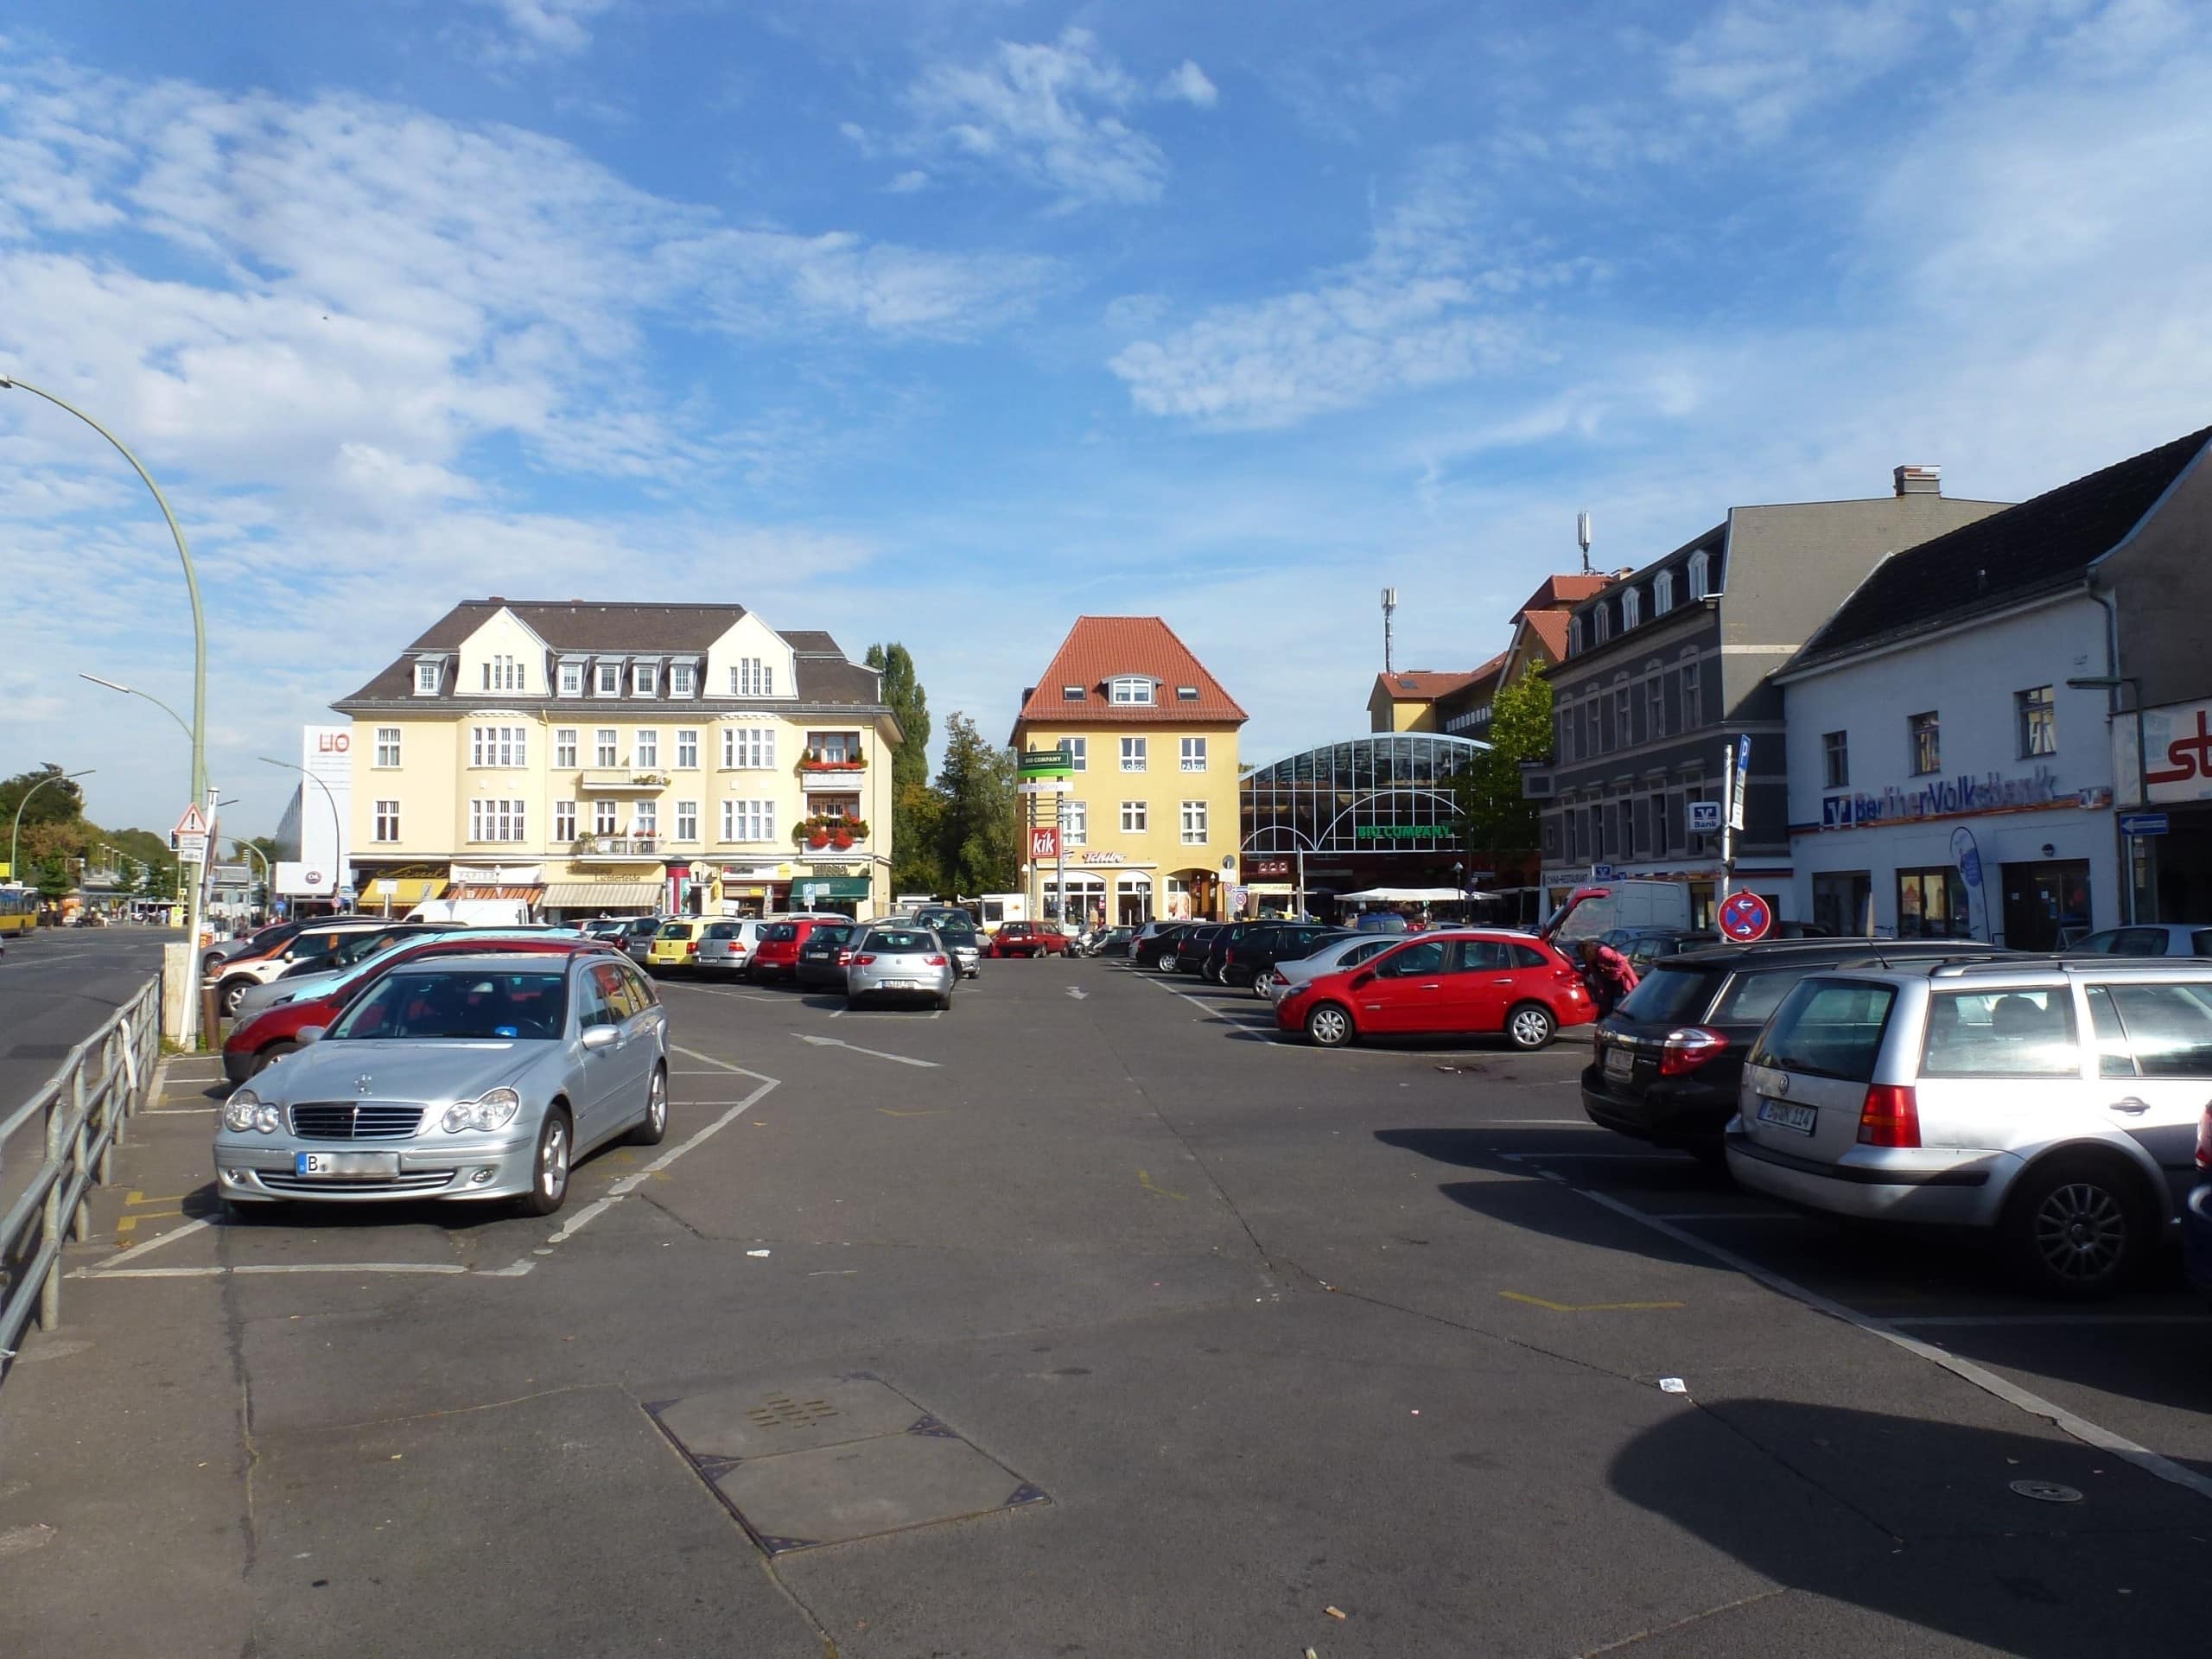 Derzeit ist der Kranoldplatz außer an Markttagen ein Parkplatz für knapp 70 Autos. Das könnte sich bald ändern. Bildquelle: Fridolin freudenfett (Peter Kuley), CC BY-SA 3.0 , via Wikimedia Commons